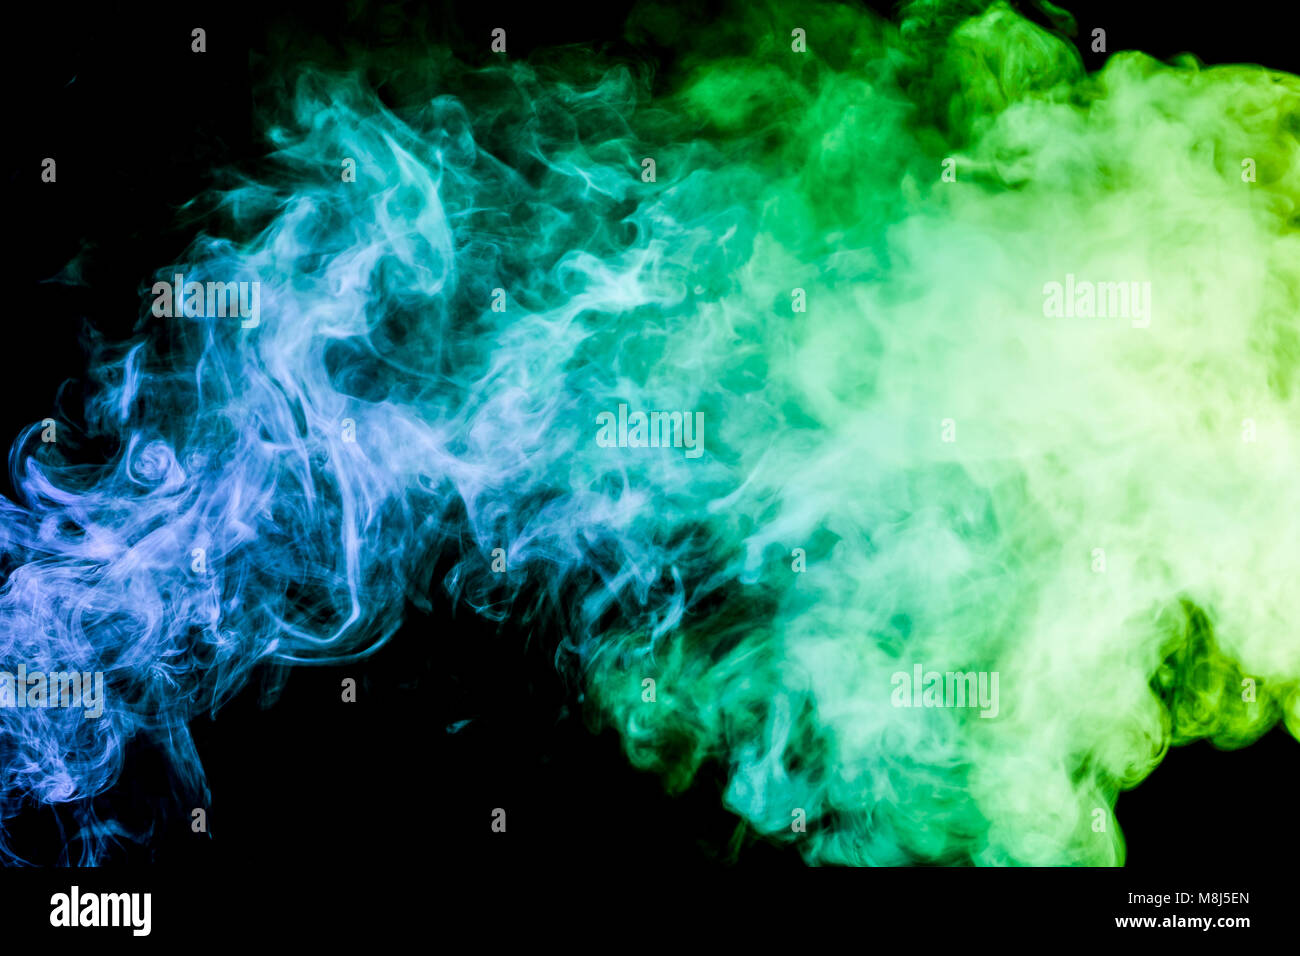 https://c8.alamy.com/compes/m8j5en/humo-de-colores-verde-y-azul-sobre-un-fondo-negro-aislado-antecedentes-desde-el-humo-de-vape-m8j5en.jpg